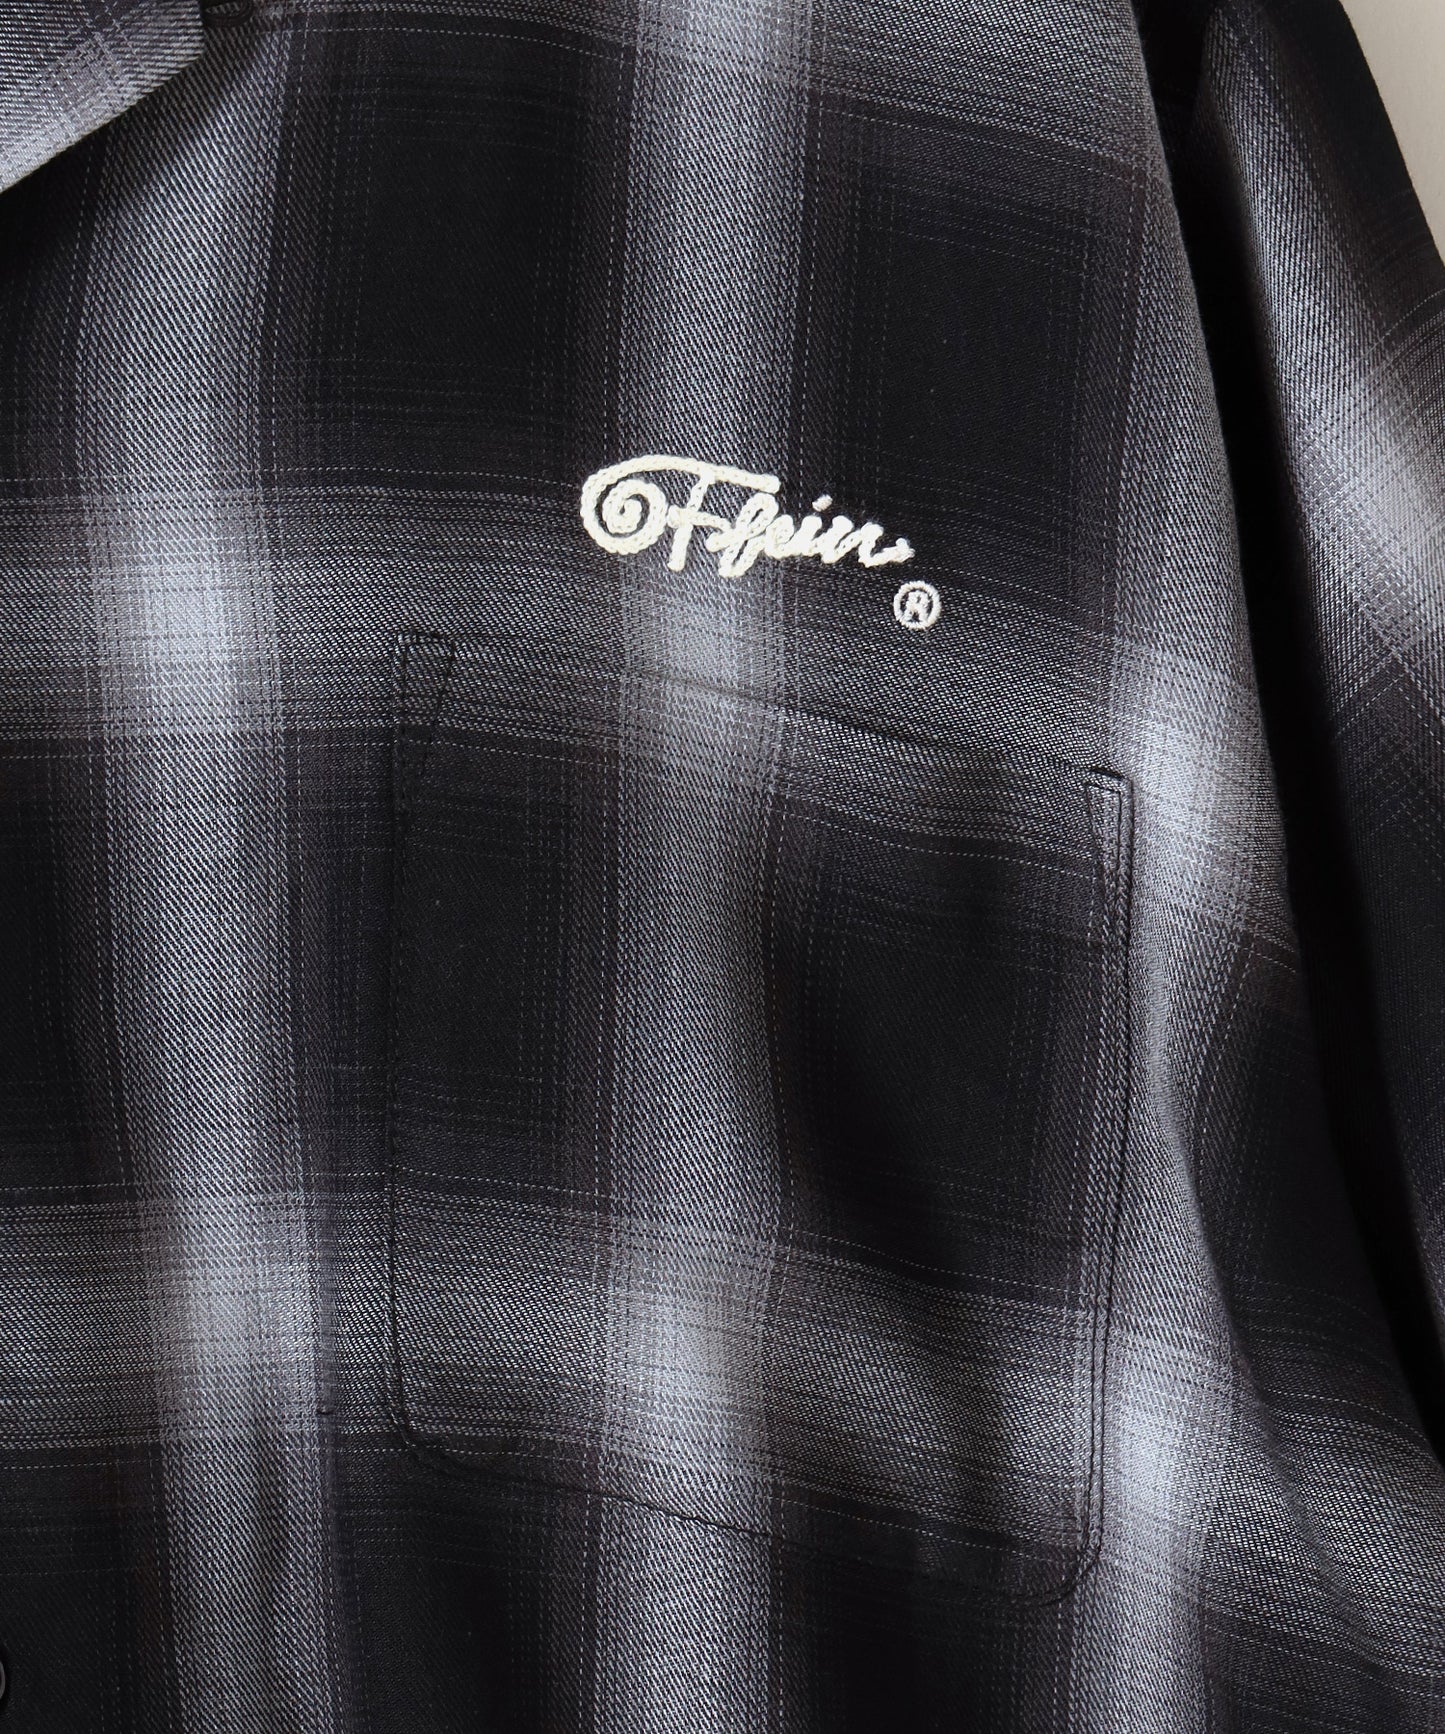 【FFEIN(フェイン)】 OMBRE CHECK EMB H/S SHIRT / オンブレチェック 刺繍 半袖 オープンカラー シャツ チャコール